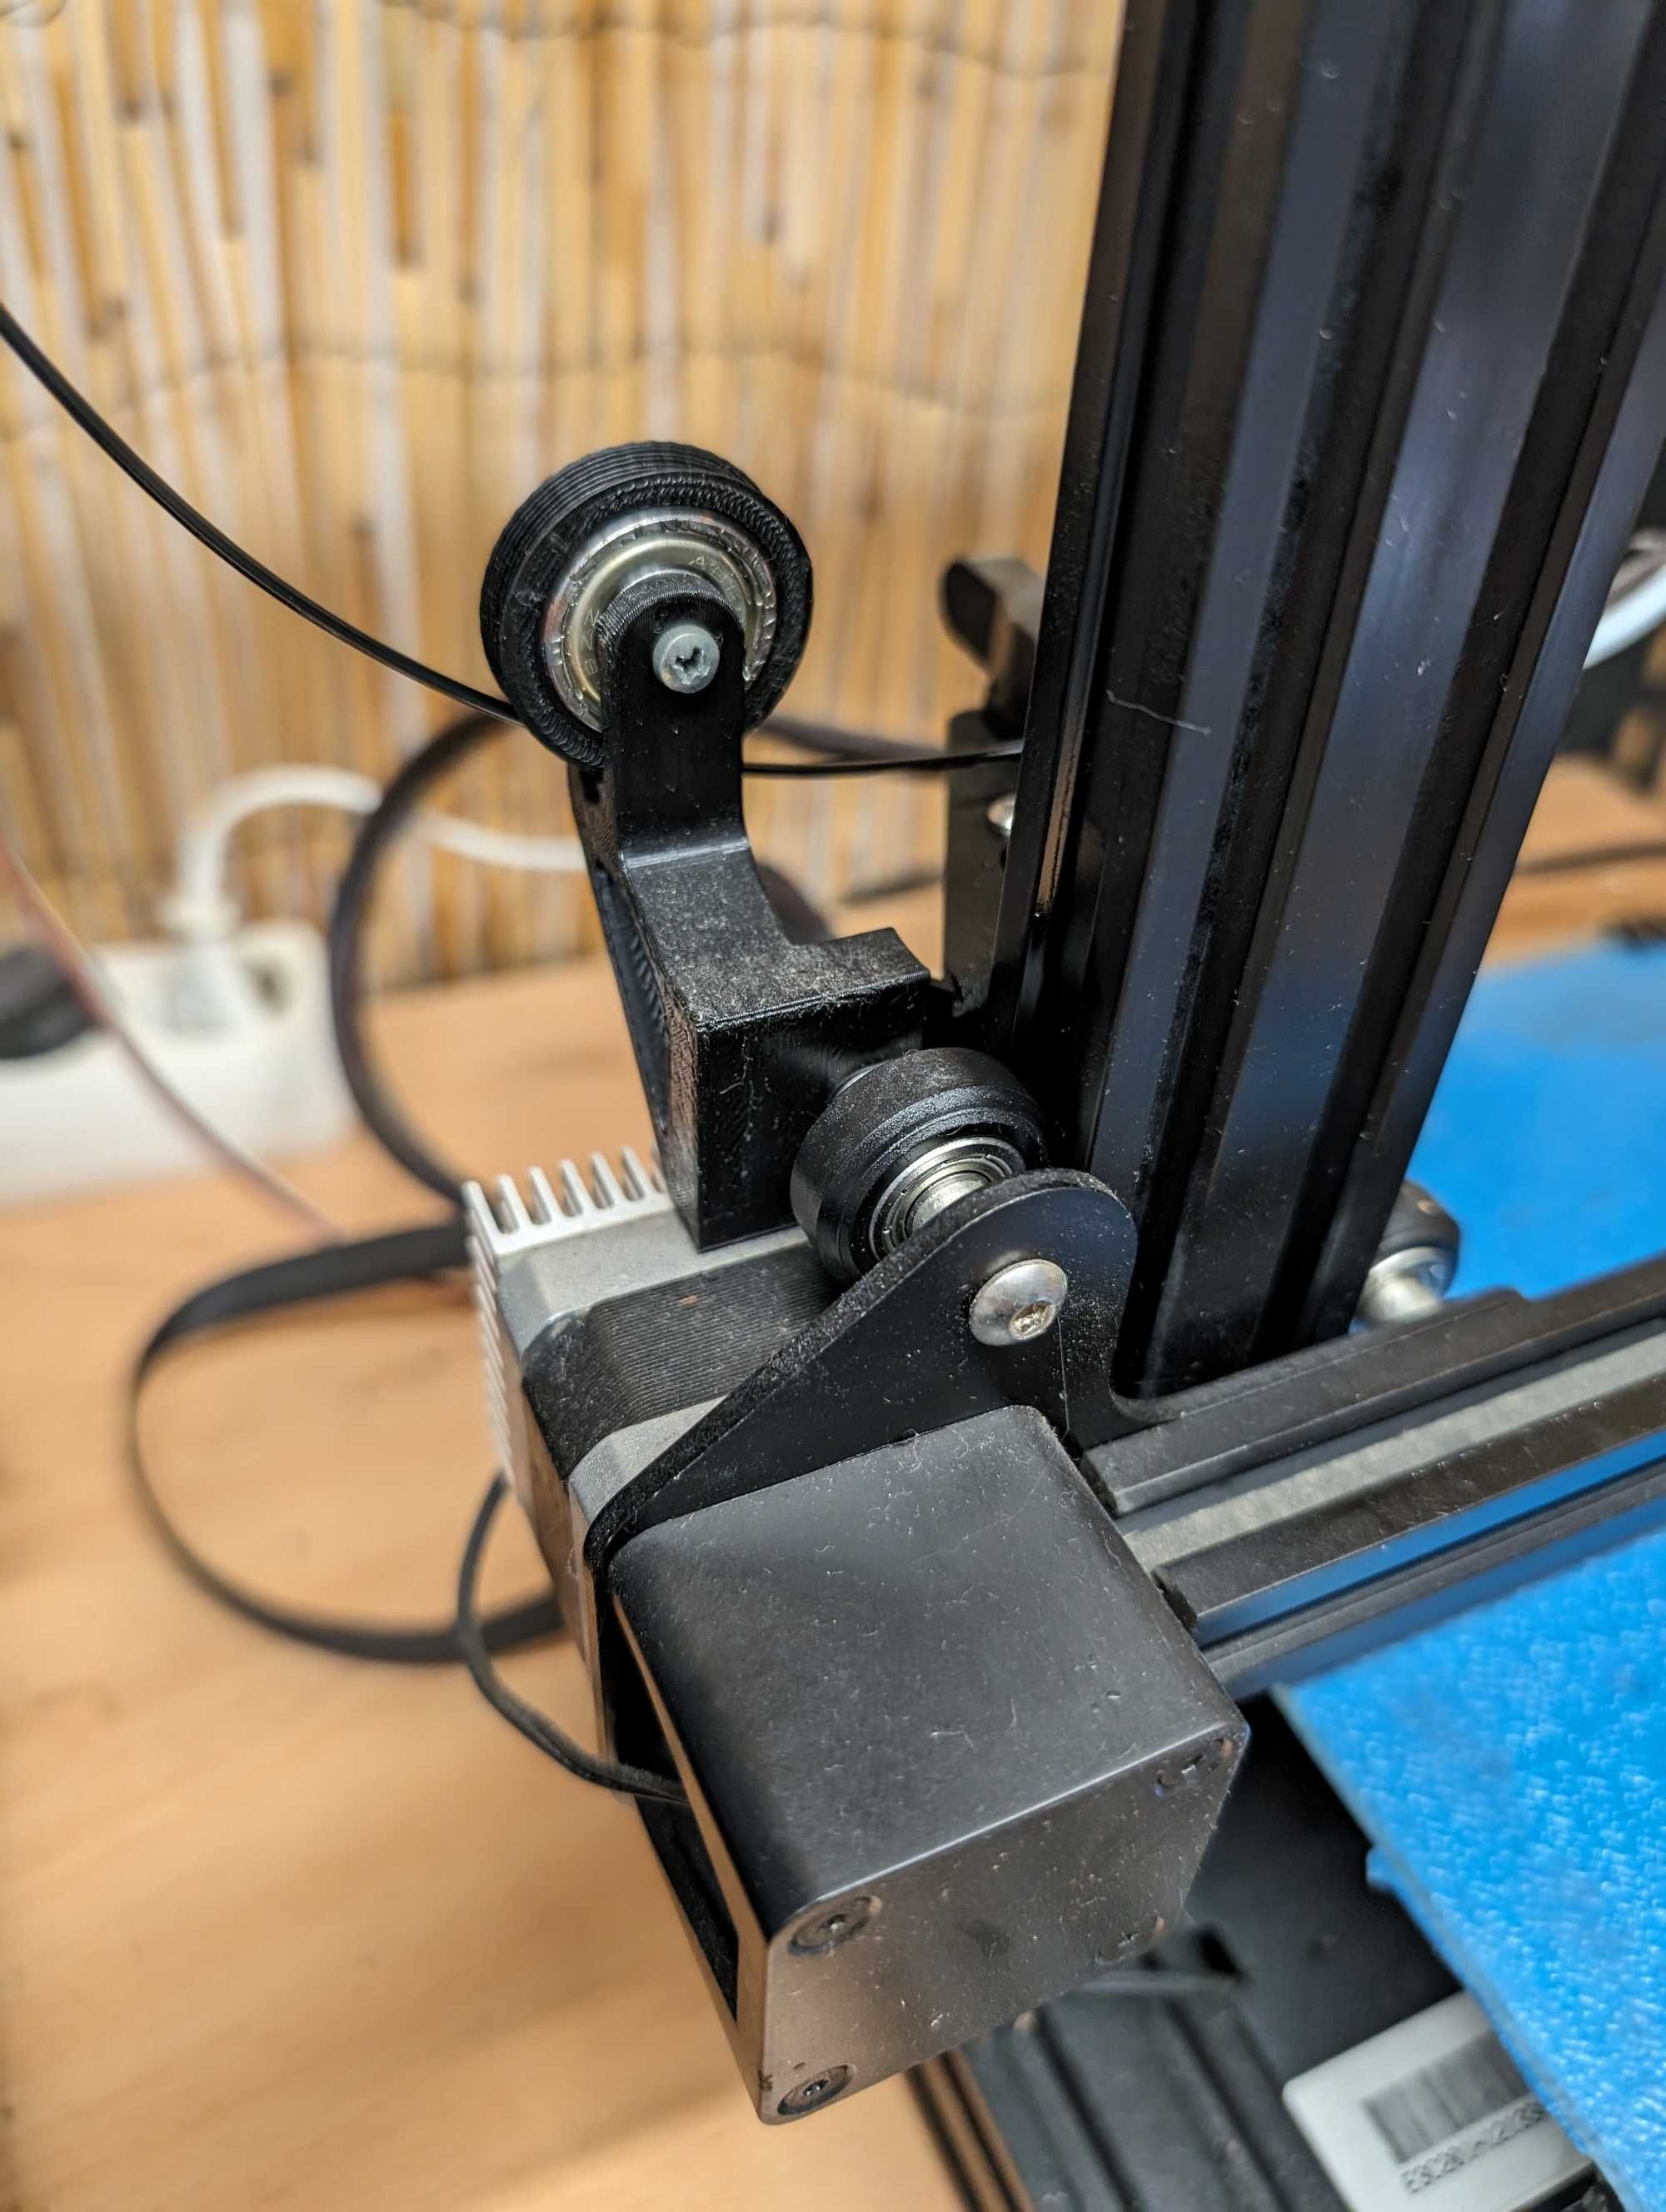 Impressora 3D Ender 3 com muitos upgrades